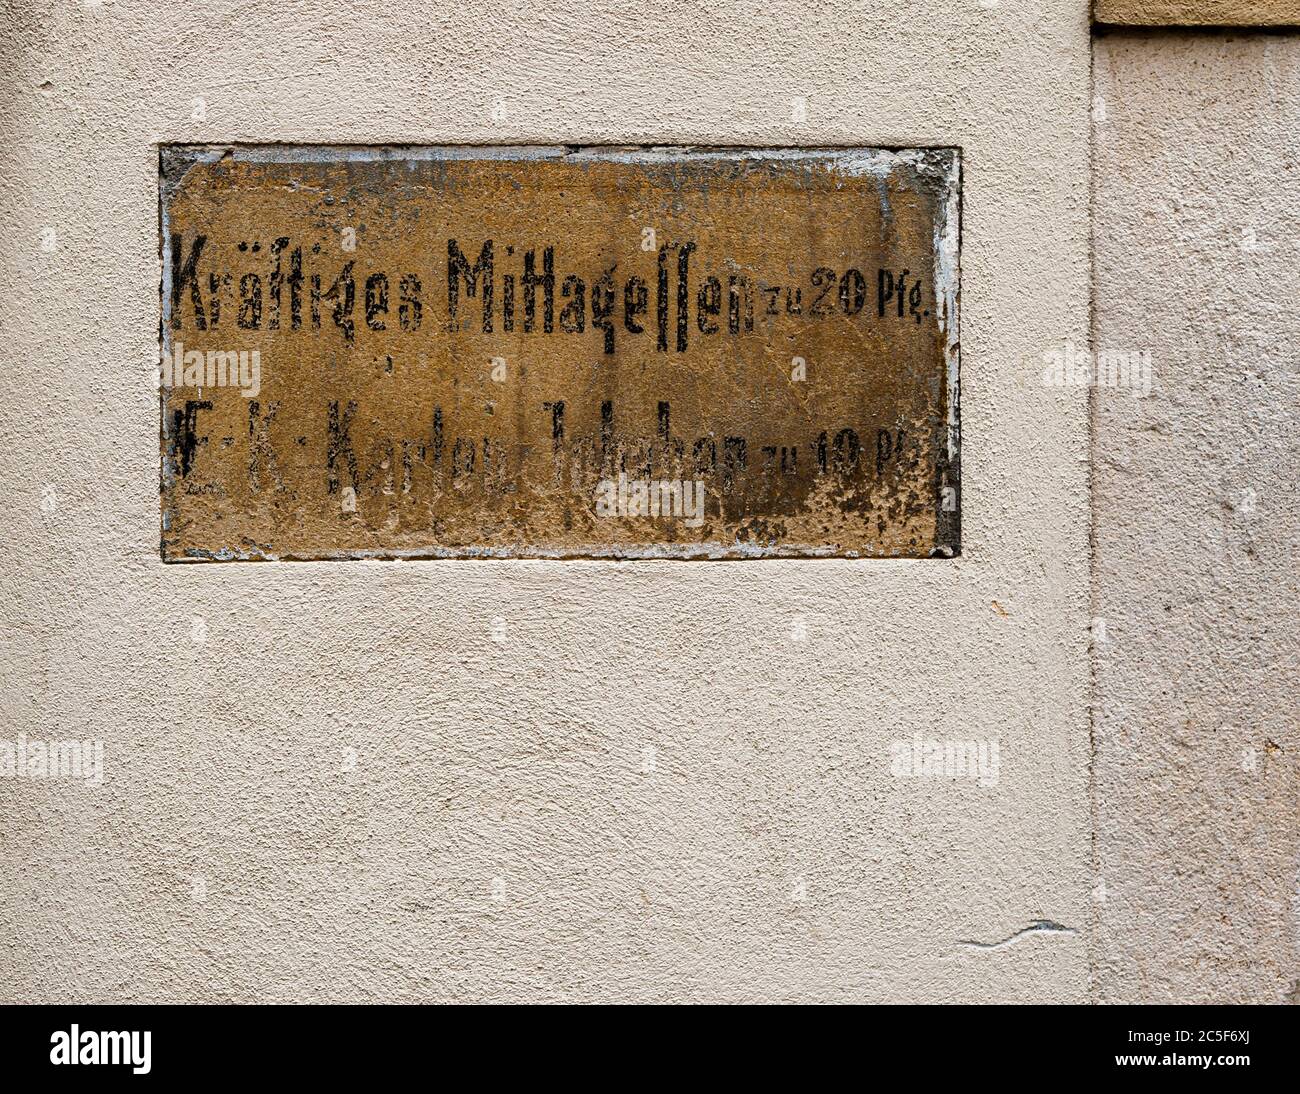 Herzhaftes Mittagessen bei 20 Pfennigen verkündet die verblasste Inschrift an einer Hauswand in Görlitz Stockfoto